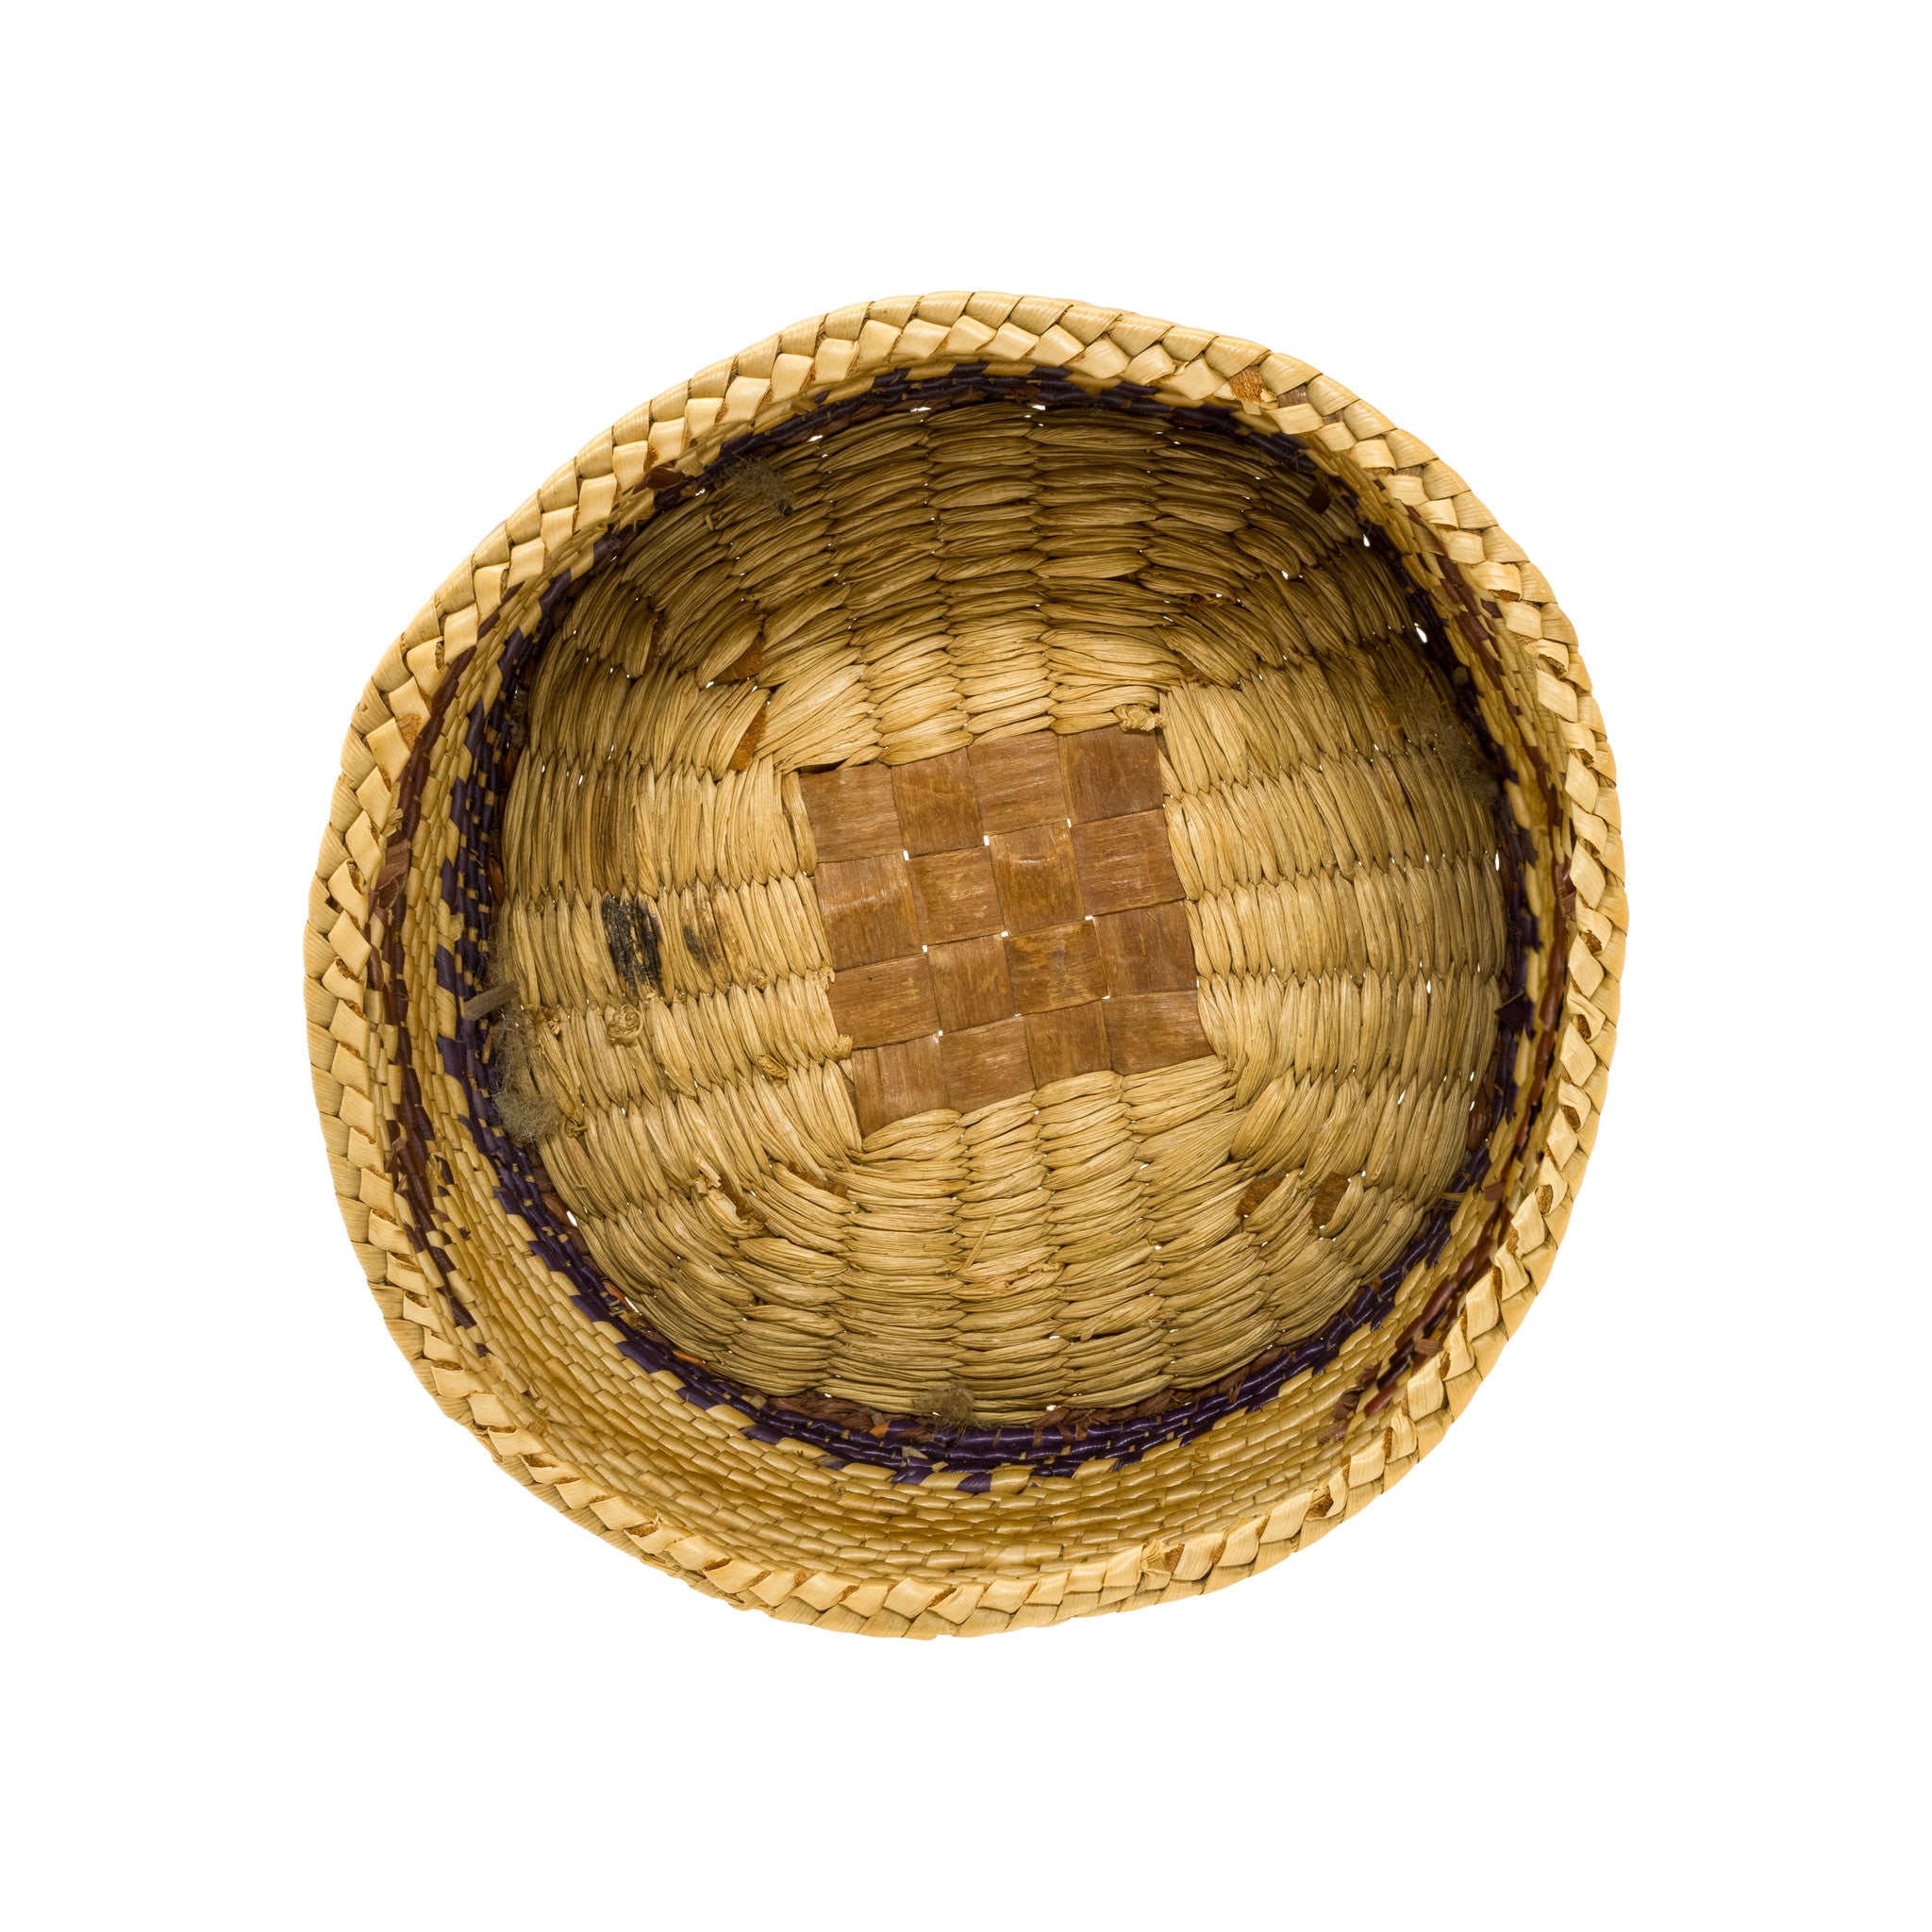 Nuu-chah-nulth Trinket Basket